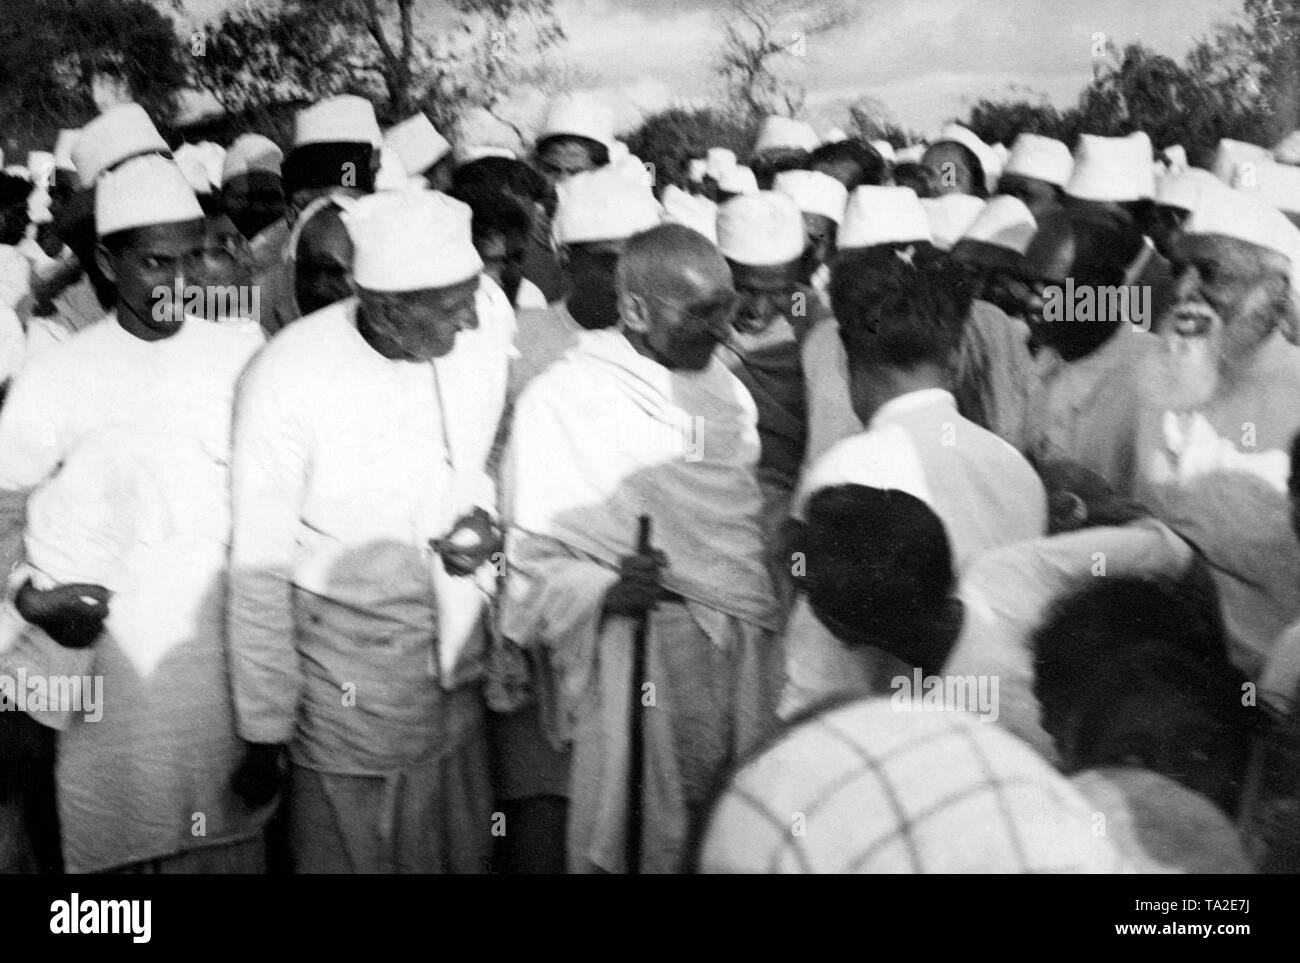 Mahatma Gandhi und auf der rechten Seite Richter Baroda Anweisungen zu erteilen, ihre Anhänger auf die Salzwiesen. Die Salt Marsh war eine Protestkampagne gegen die britische Kolonialmacht. Das Ziel war Salz selbst zu produzieren und unabhängig von der Britischen Monopol geworden. Diese Kampagne war der Beginn der indischen Unabhängigkeitsbewegung. Stockfoto